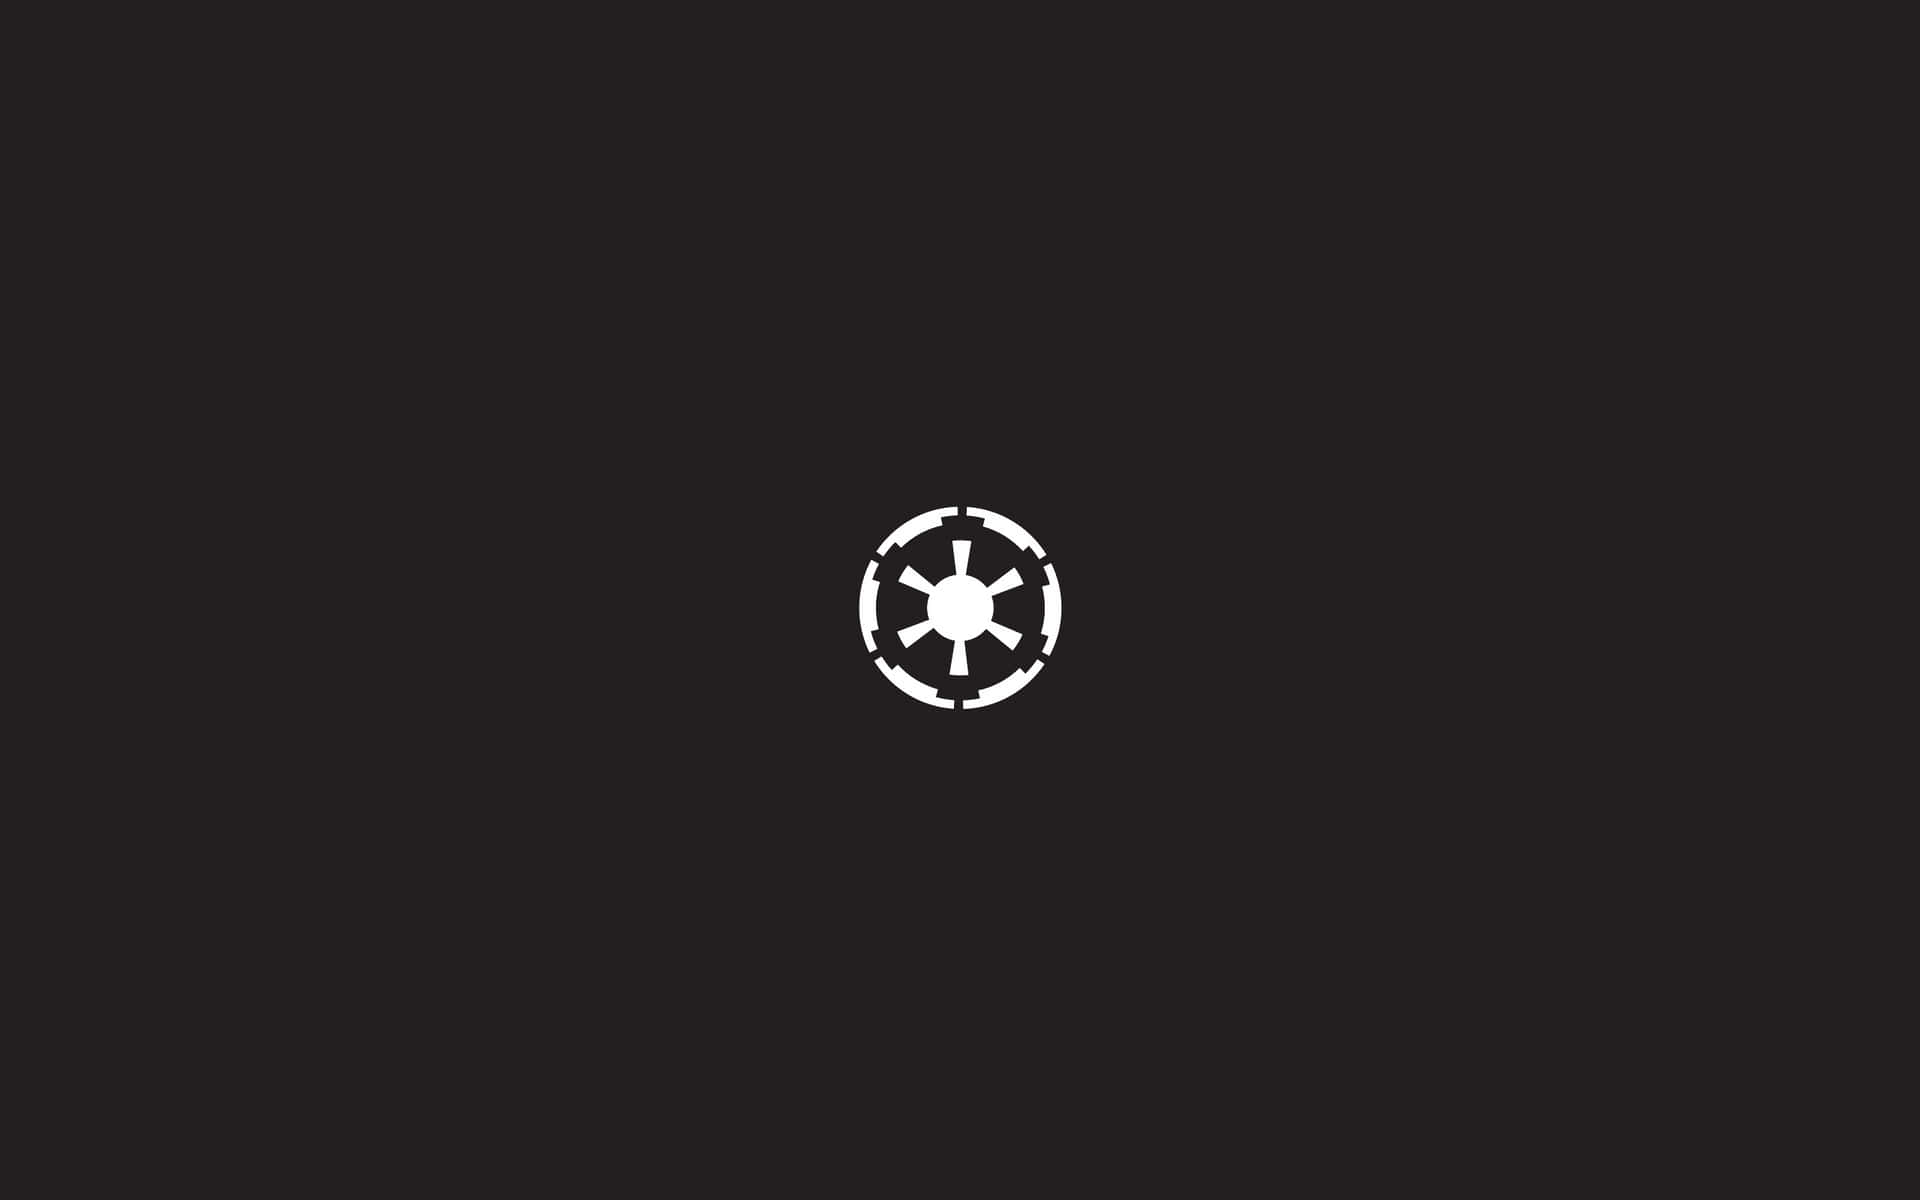 Starwars-logo Auf Schwarzem Hintergrund Wallpaper